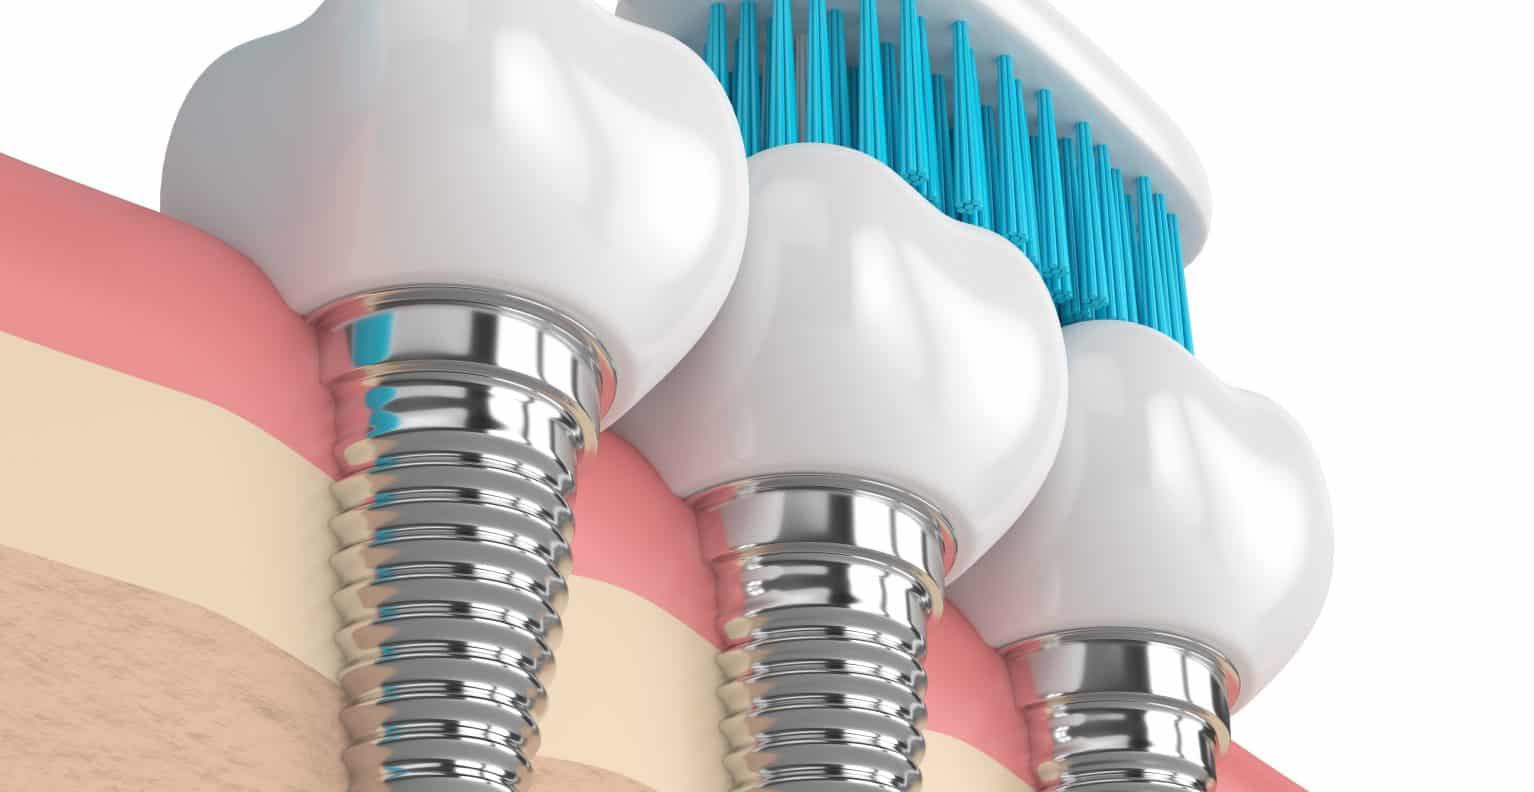 Implant dentaire : quand est-ce que l’implant intervient ?